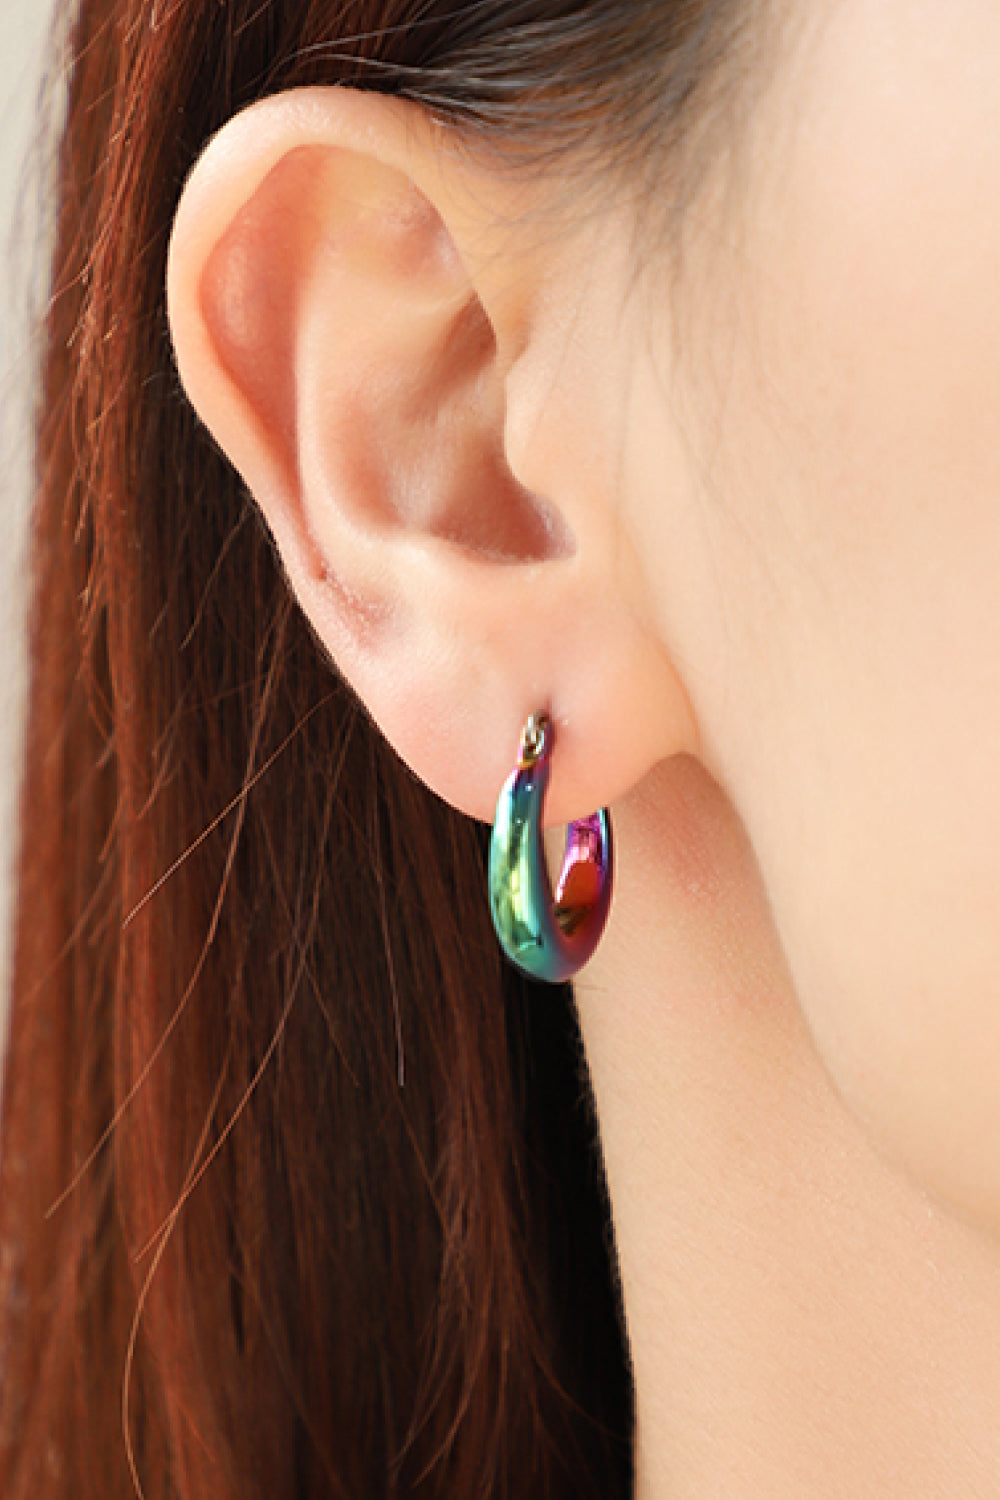 Darling Heart Multicolored Huggie Earrings - Earrings - FITGGINS